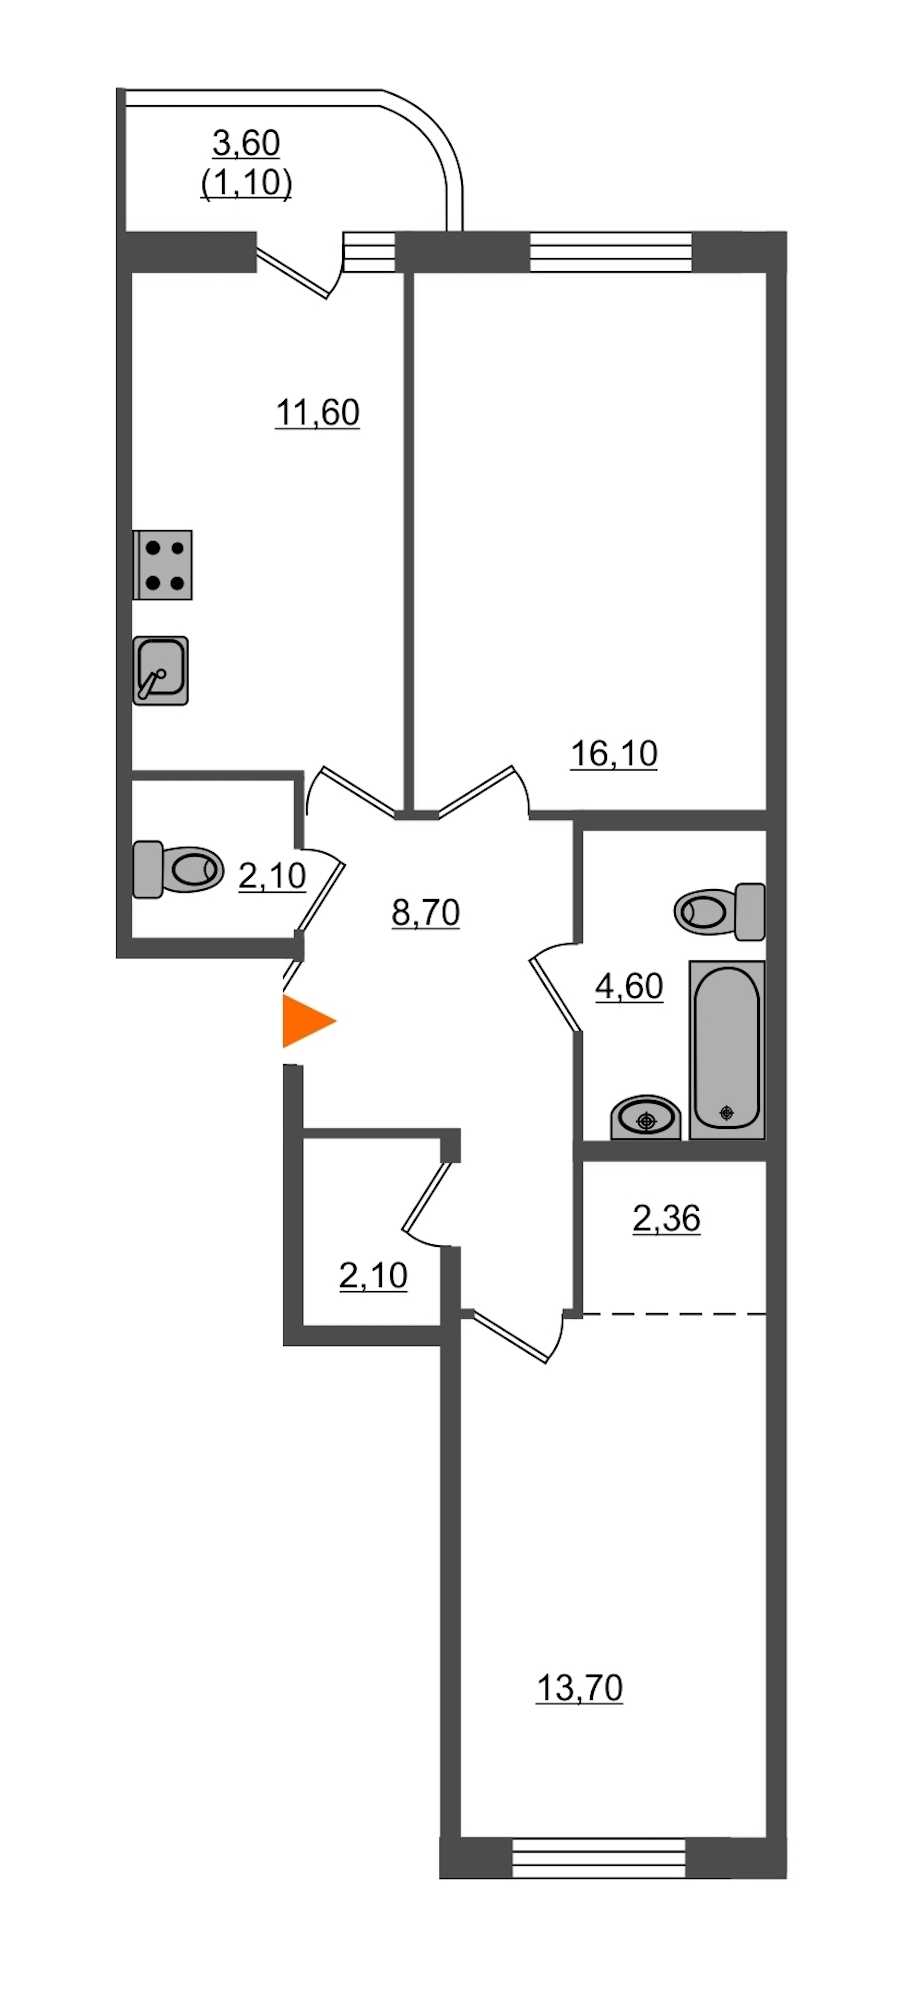 Двухкомнатная квартира в : площадь 62.36 м2 , этаж: 1 – купить в Санкт-Петербурге